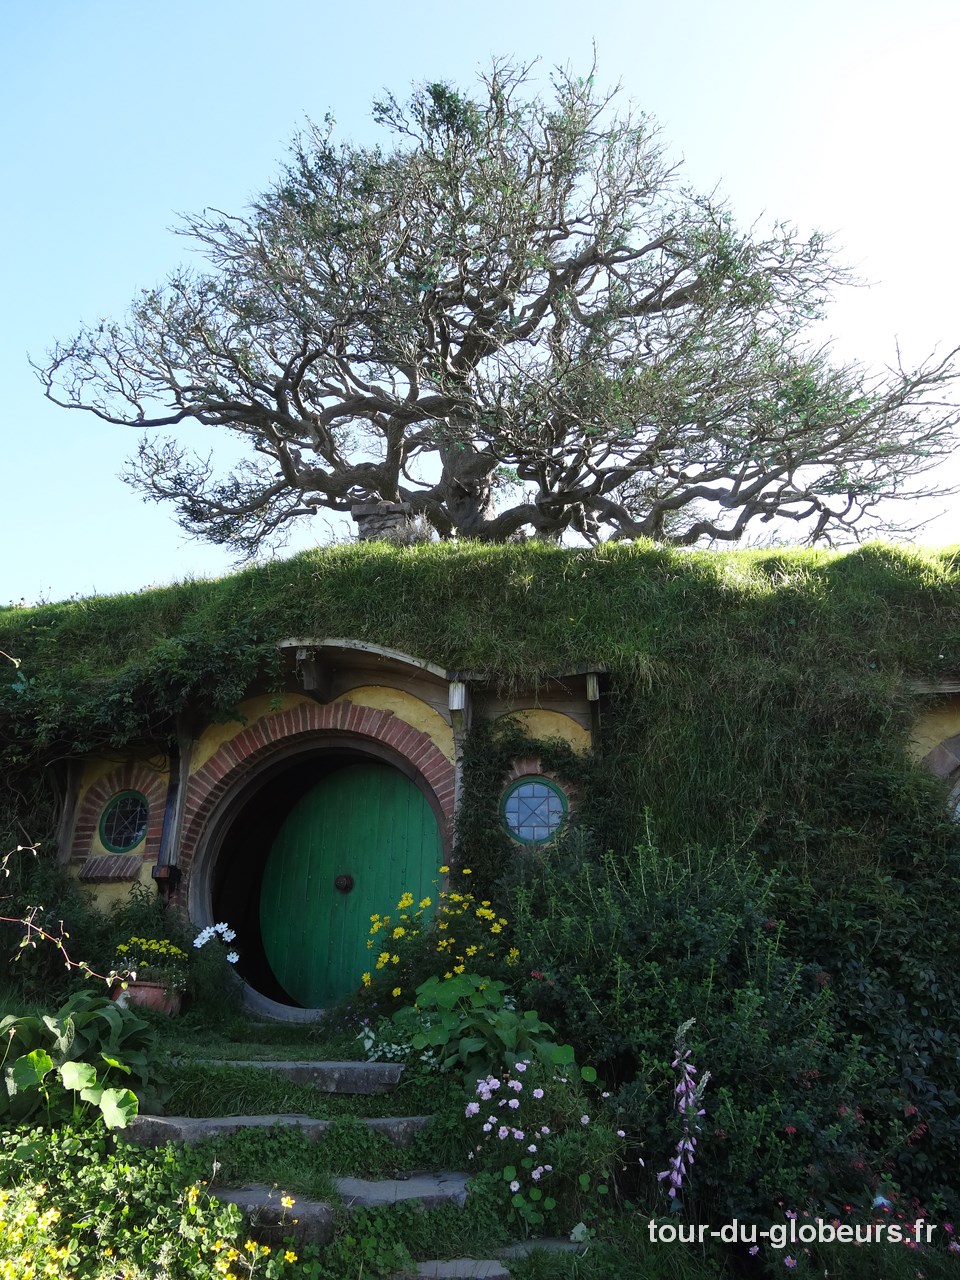 Nouvelle Zélande – maison de Hobbit à Hobbiton